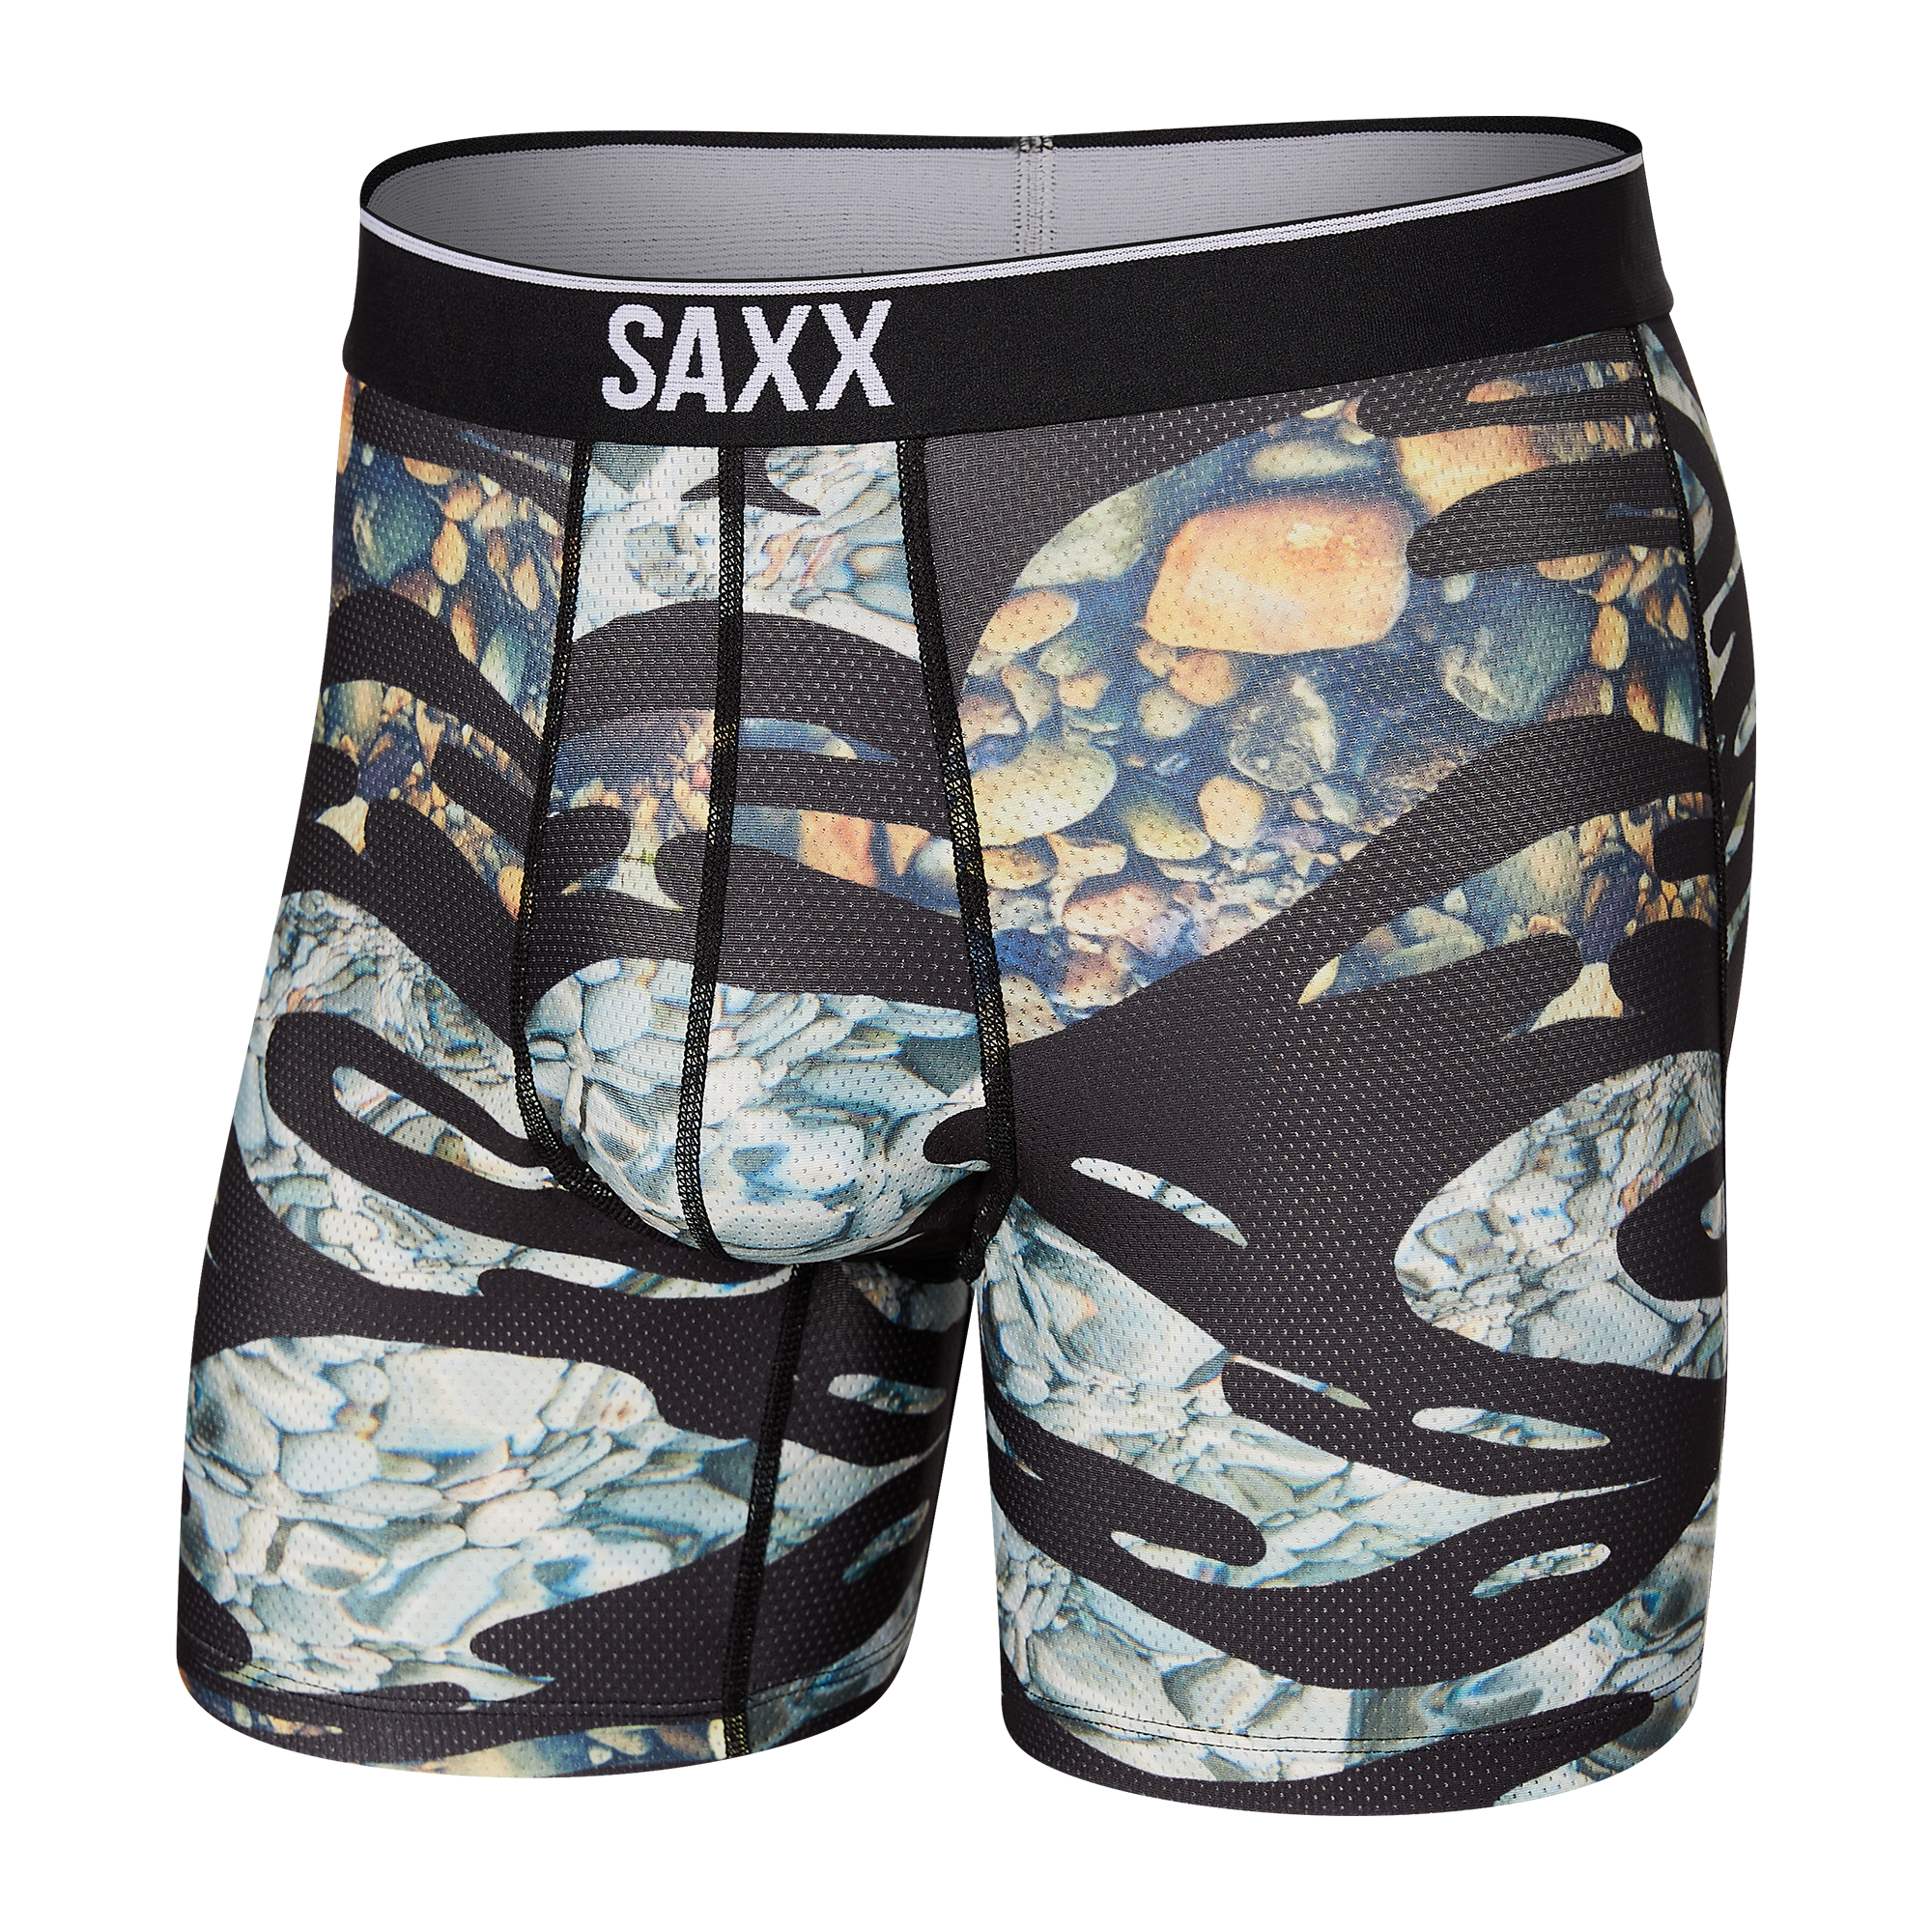 SAXX KINETIC HD BOXER BRIEF GF2 - Laces